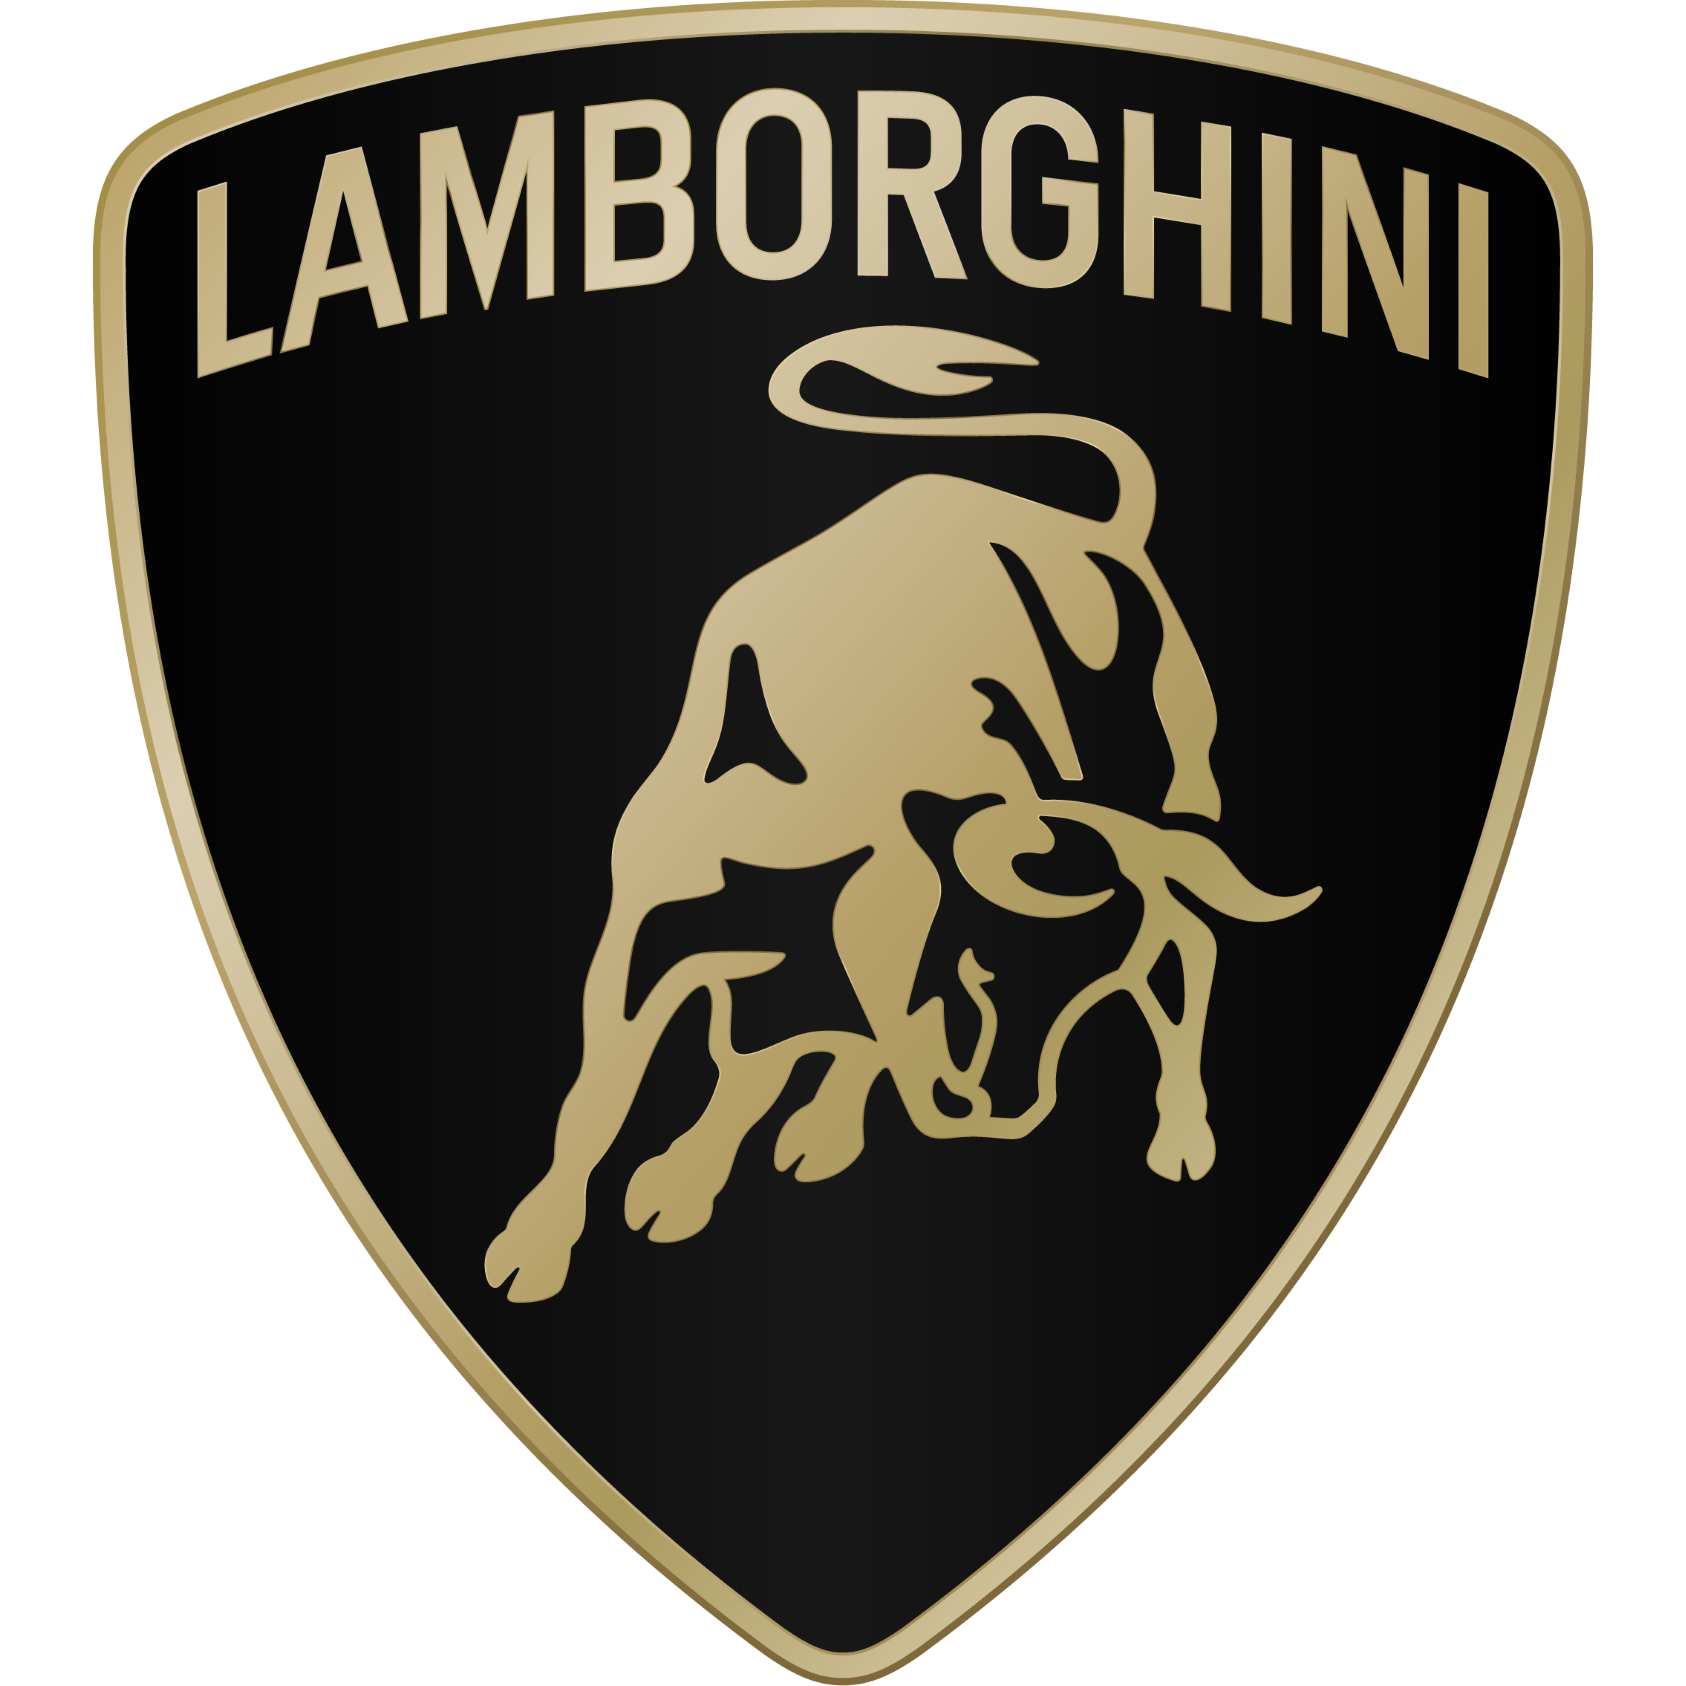 Lamborghini Leicester Syston 01162 601111